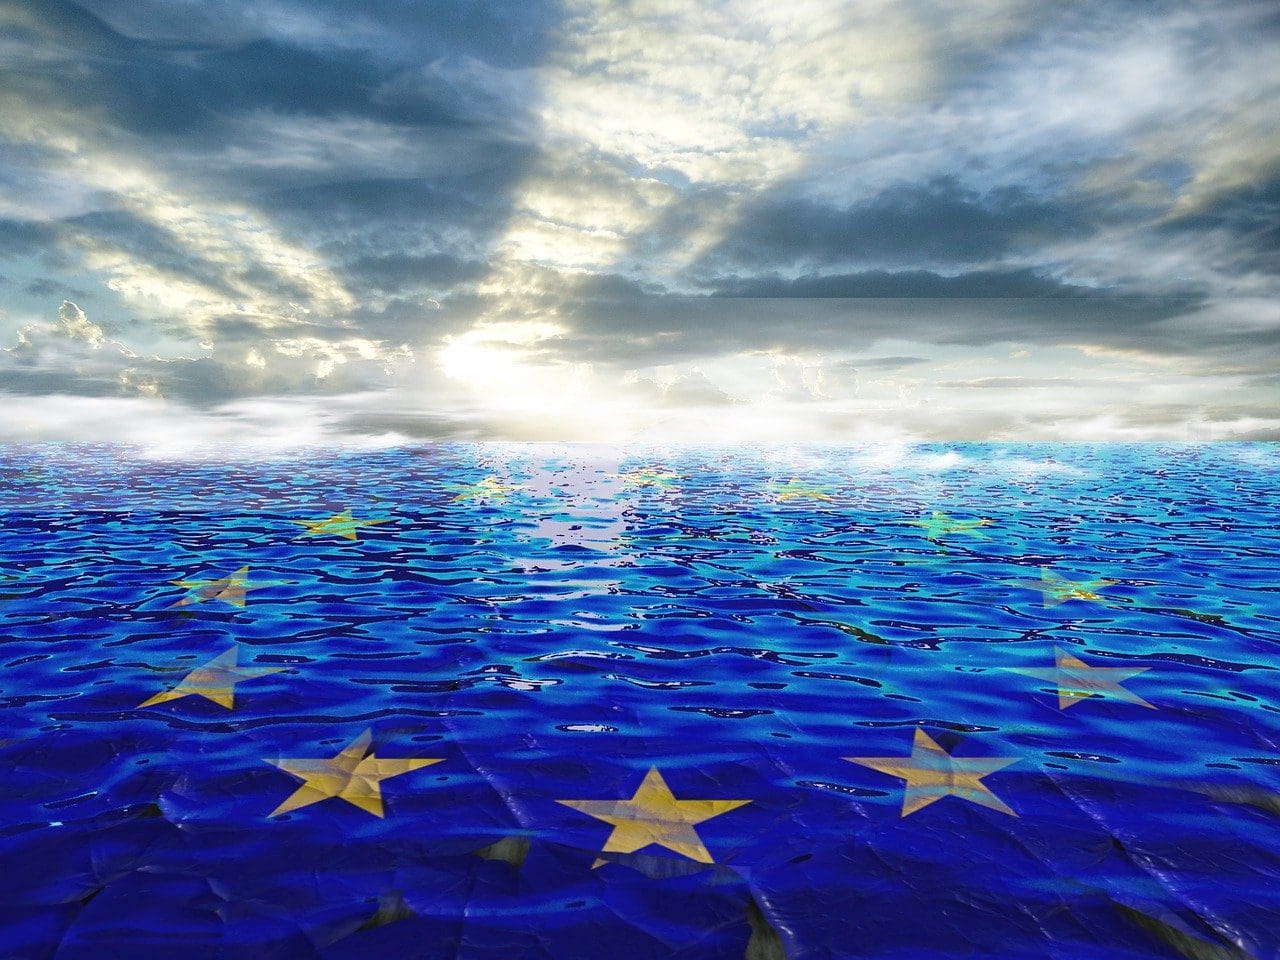 Βασικές σκέψεις για ένα ομοσπονδιακό κράτος της Ευρώπης